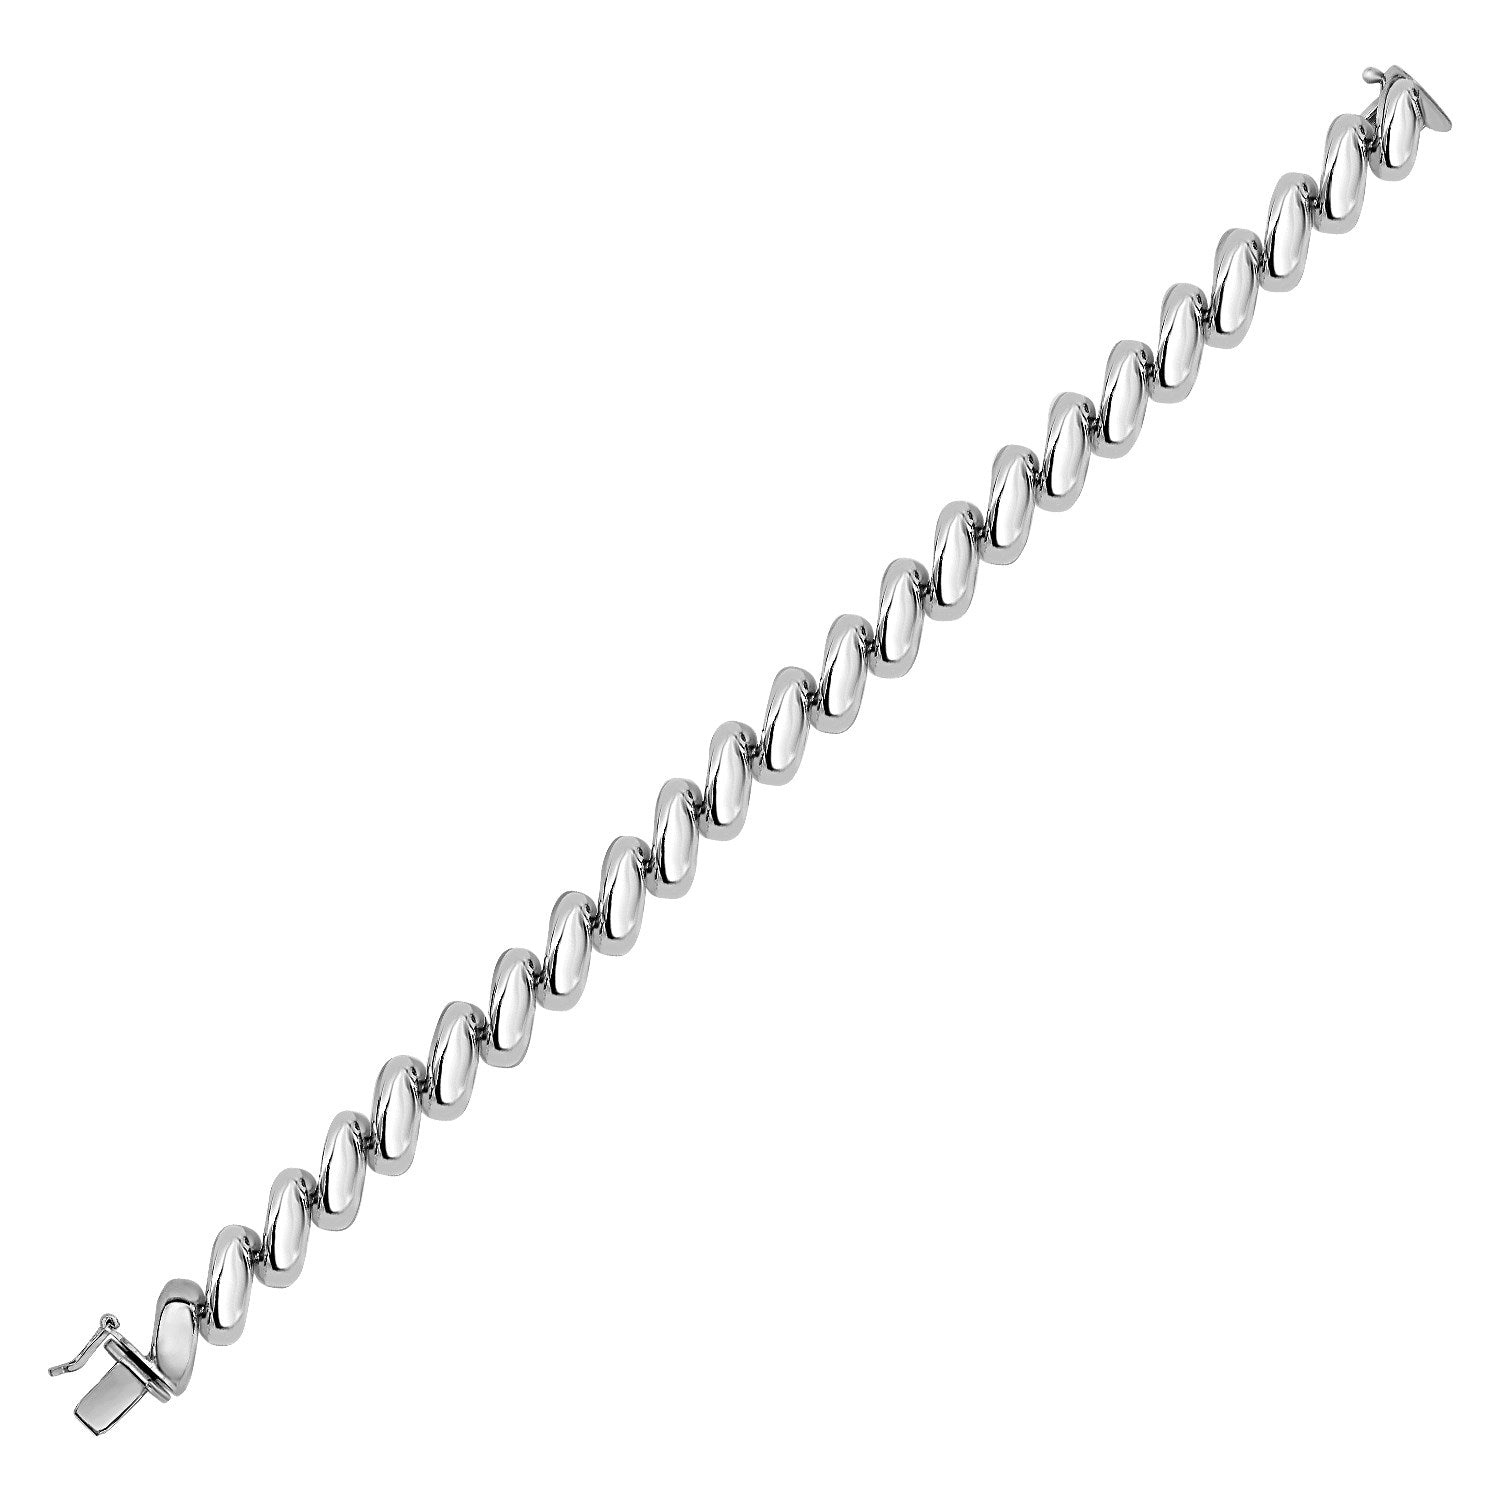 San Marco Chain Bracelet in Sterling Silver